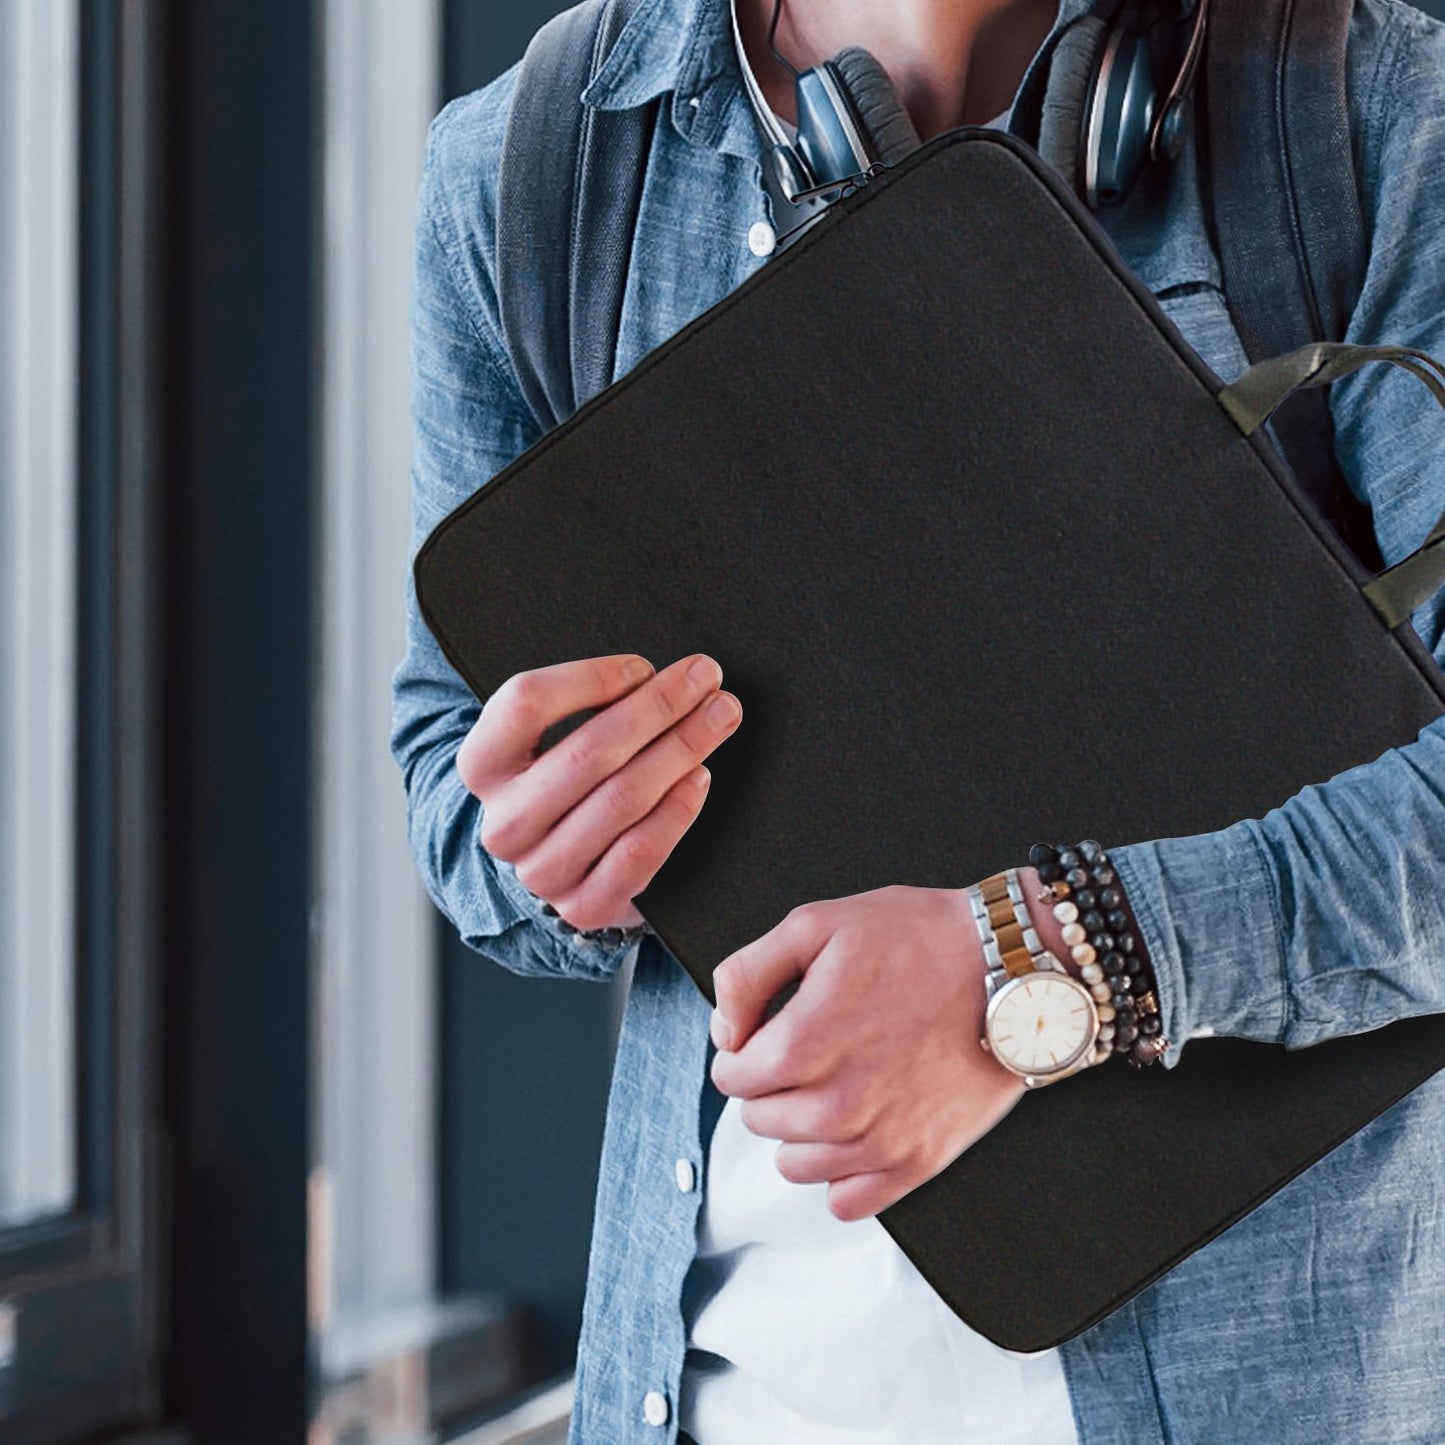 15.6” Water-Resistant Laptop Sleeve Bag